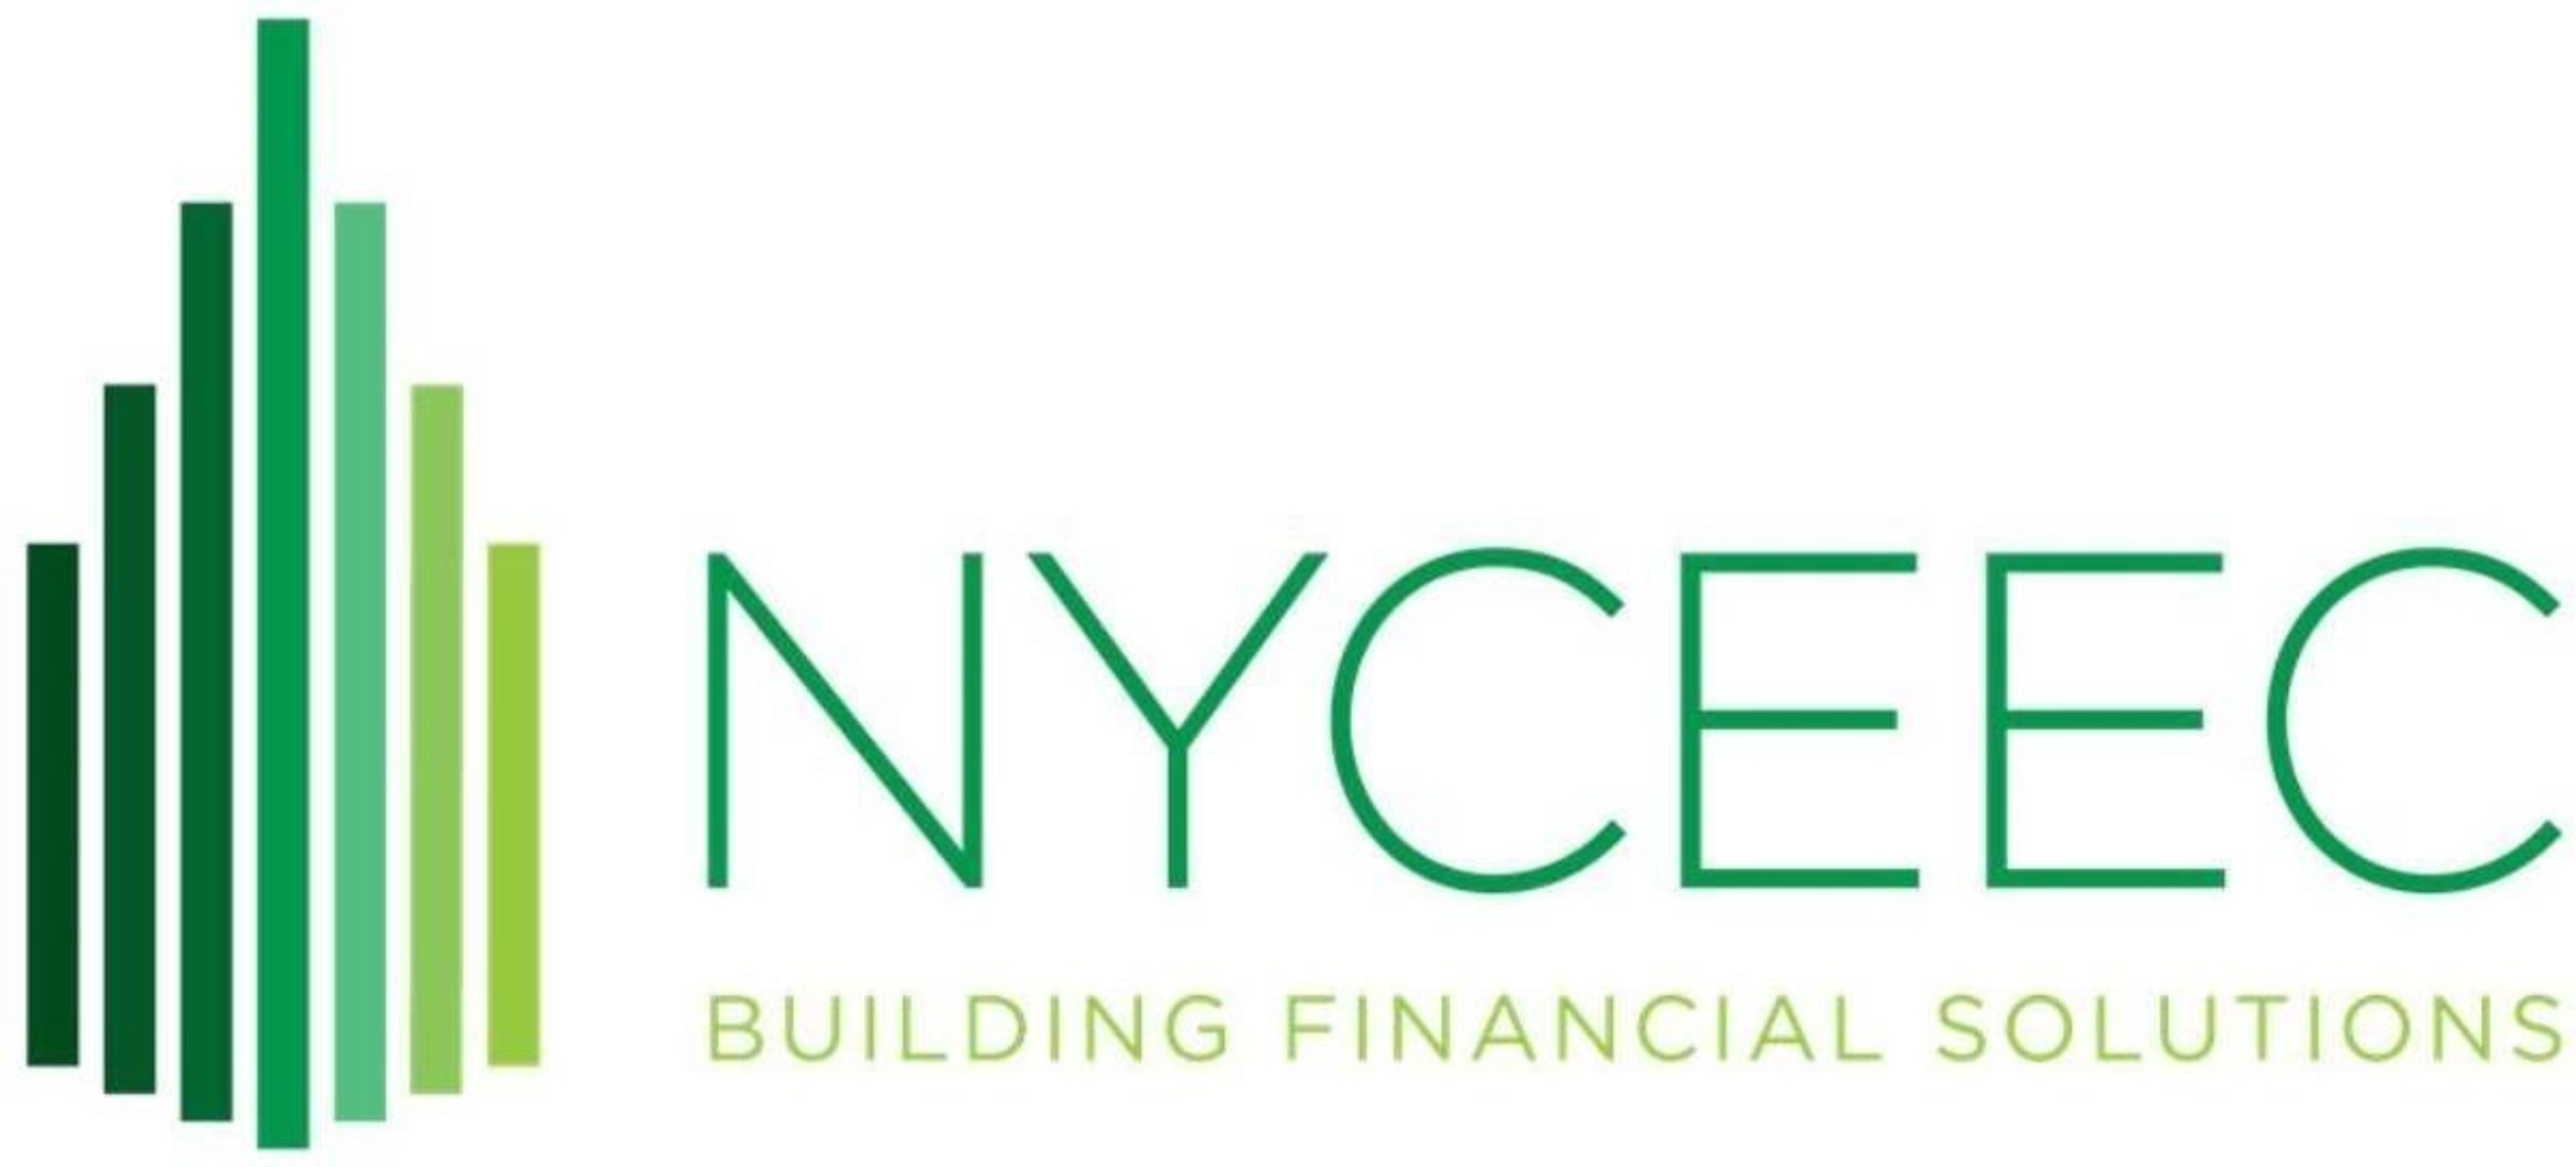 NYCEEC Building Financial Solutions